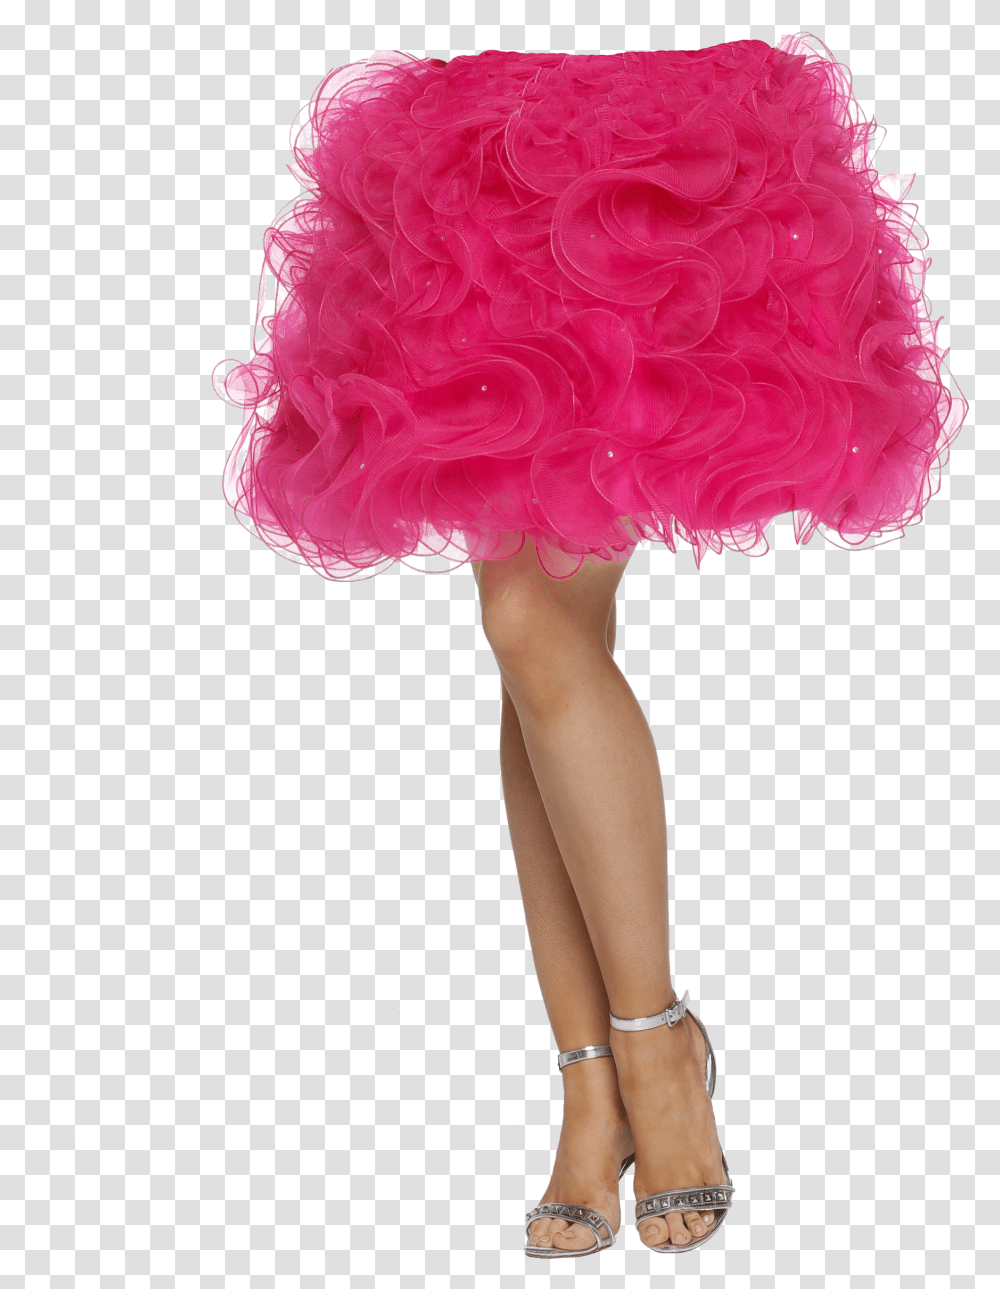 Bubble Gum Sandal Sandal, Dress, Female, Person Transparent Png